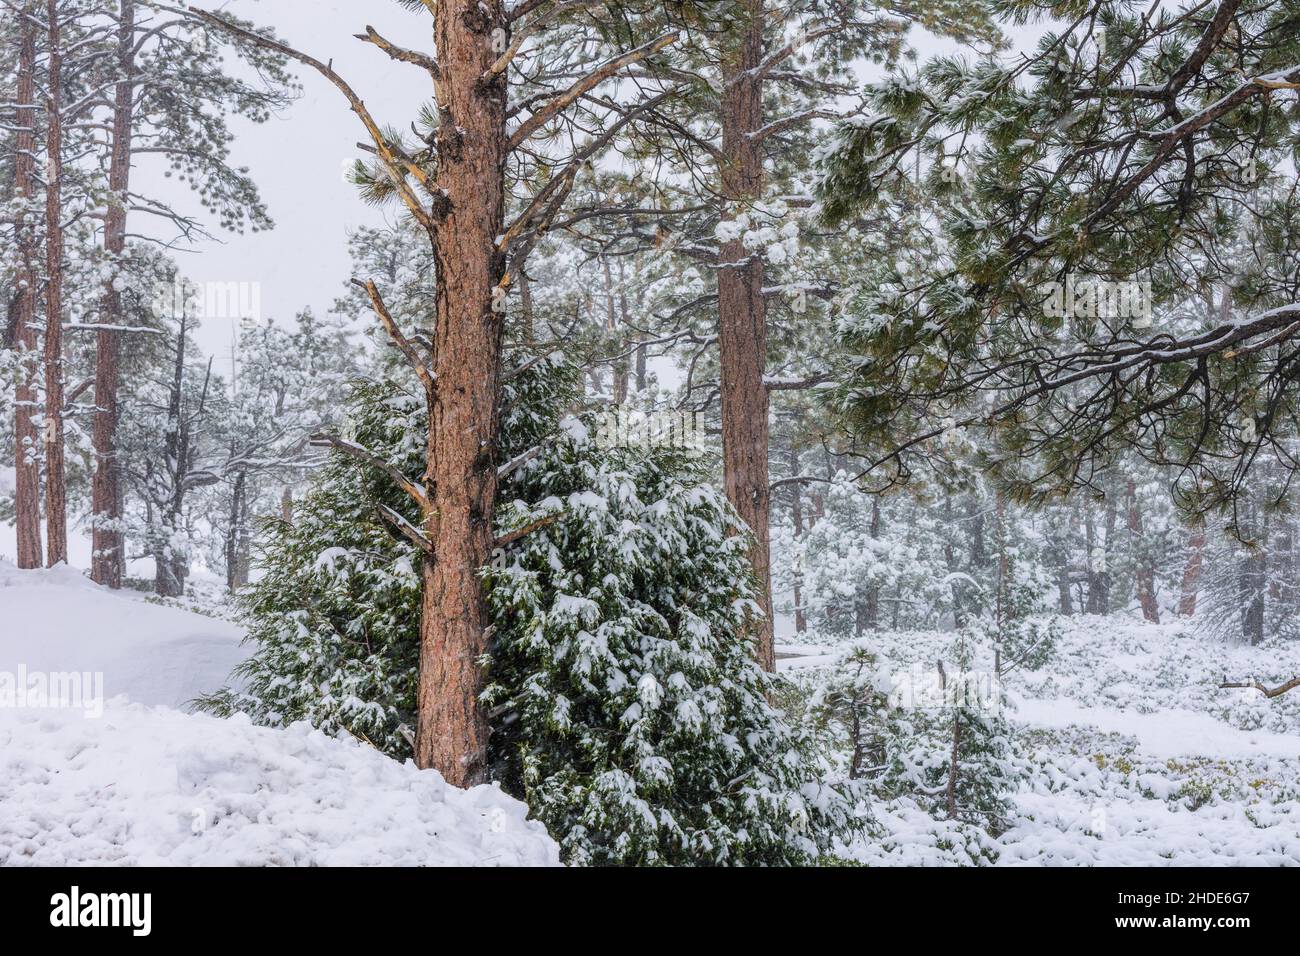 Immagine catturata durante una tempesta di neve nello Utah meridionale. Neve che cade e copre gli alberi nella neve. Foto Stock